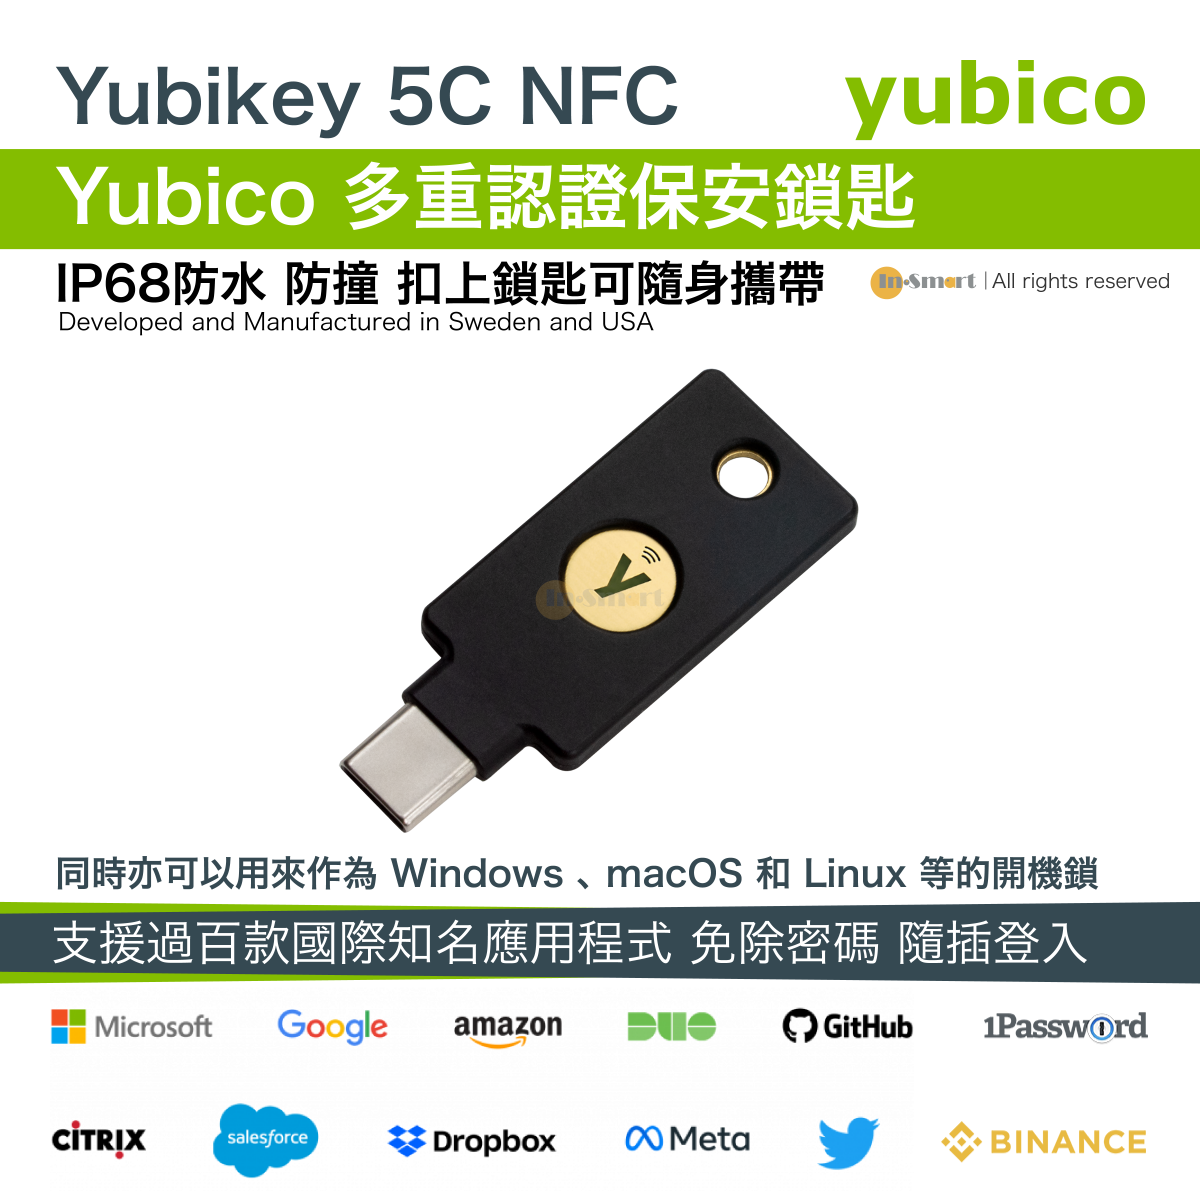 Yubico Yubikey 5C NFC